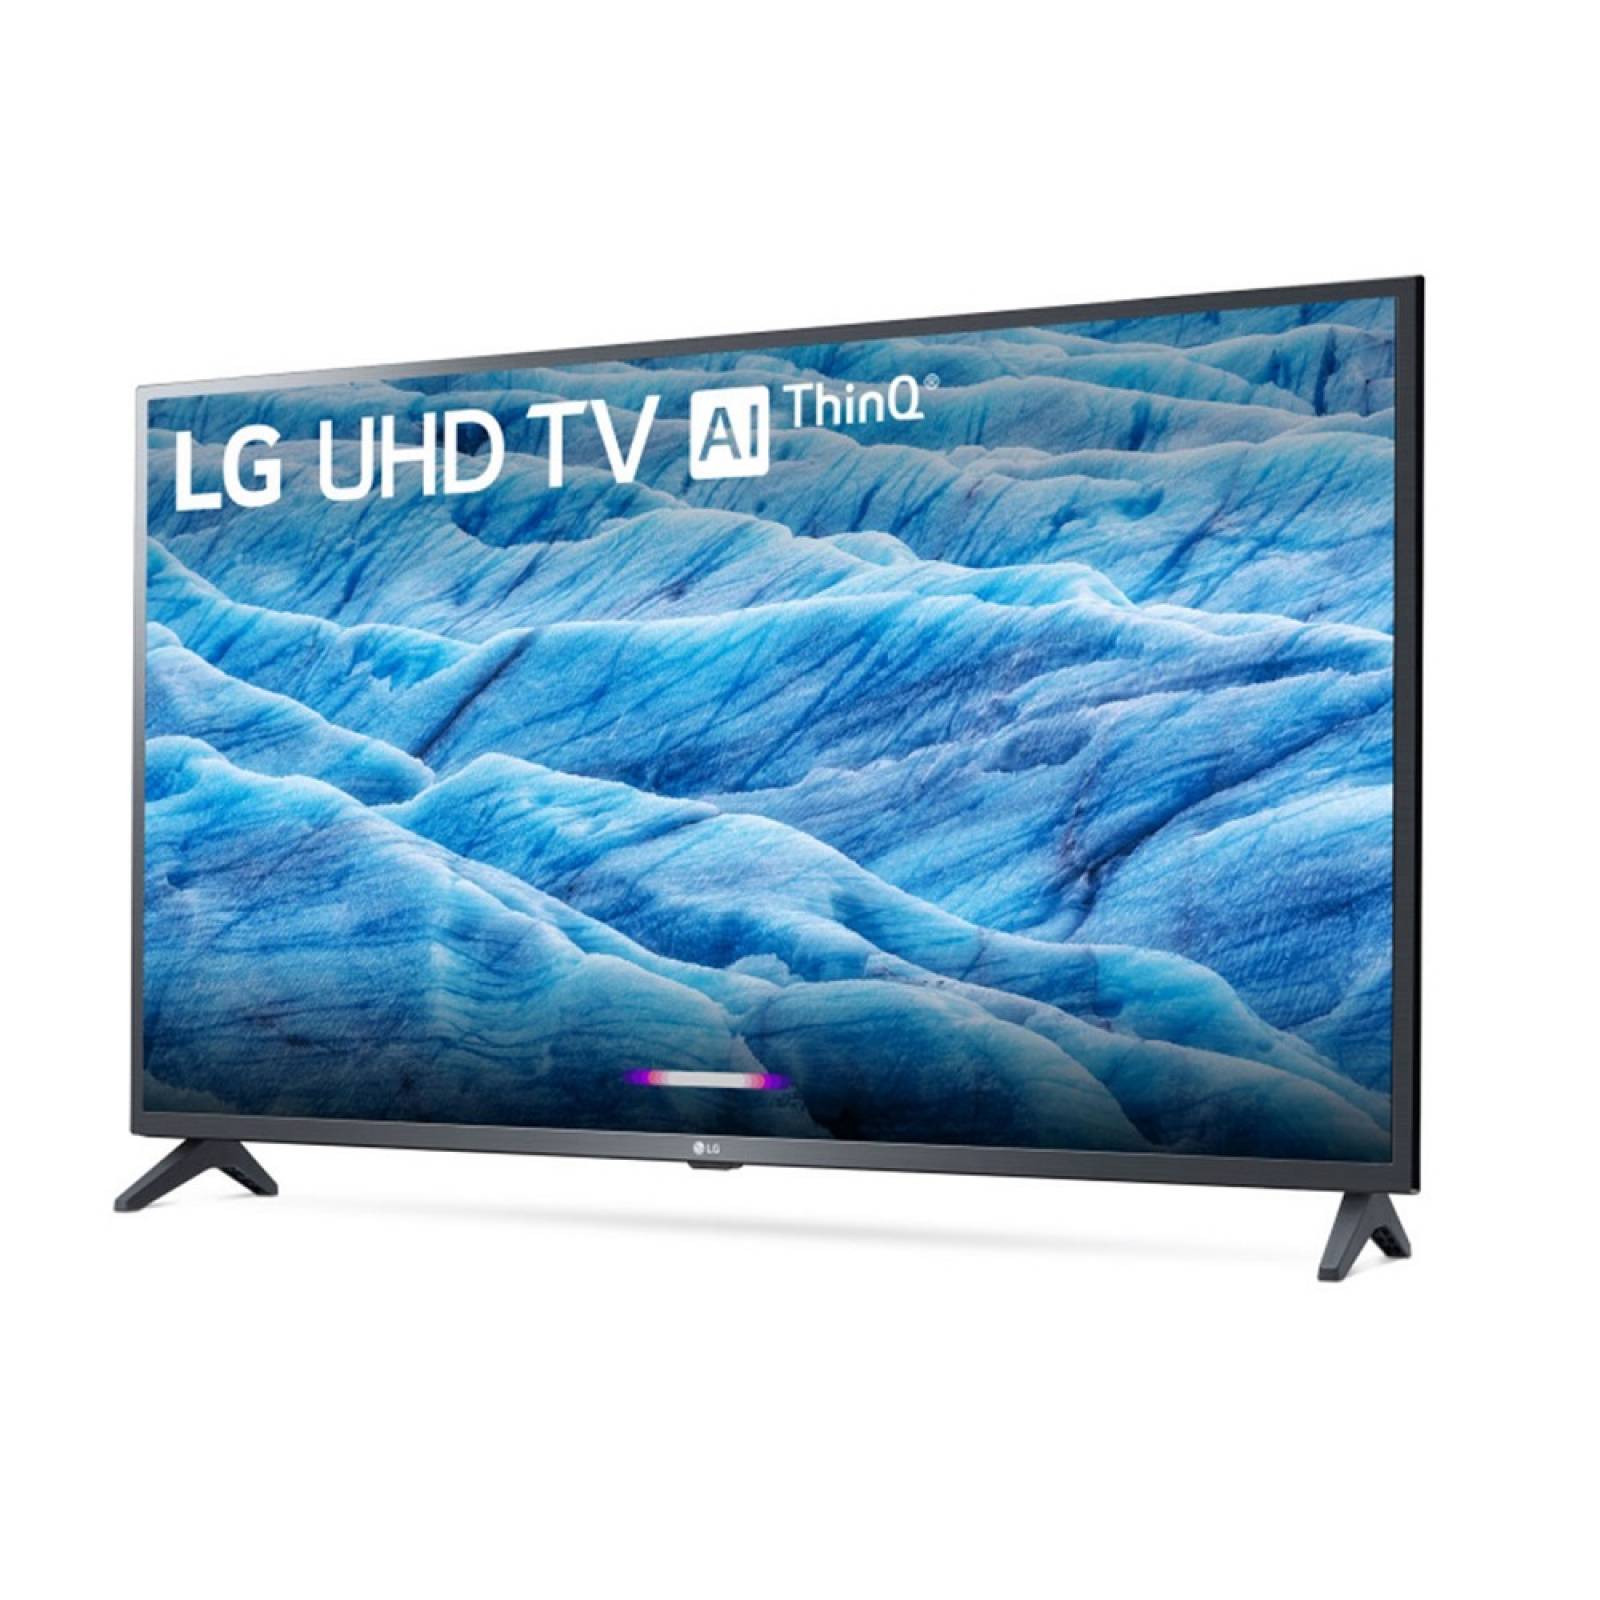 Smart TV 43 LG LED 4K UHD 60Hz webOS HDR 43UM7300AUE - Reacondicionado